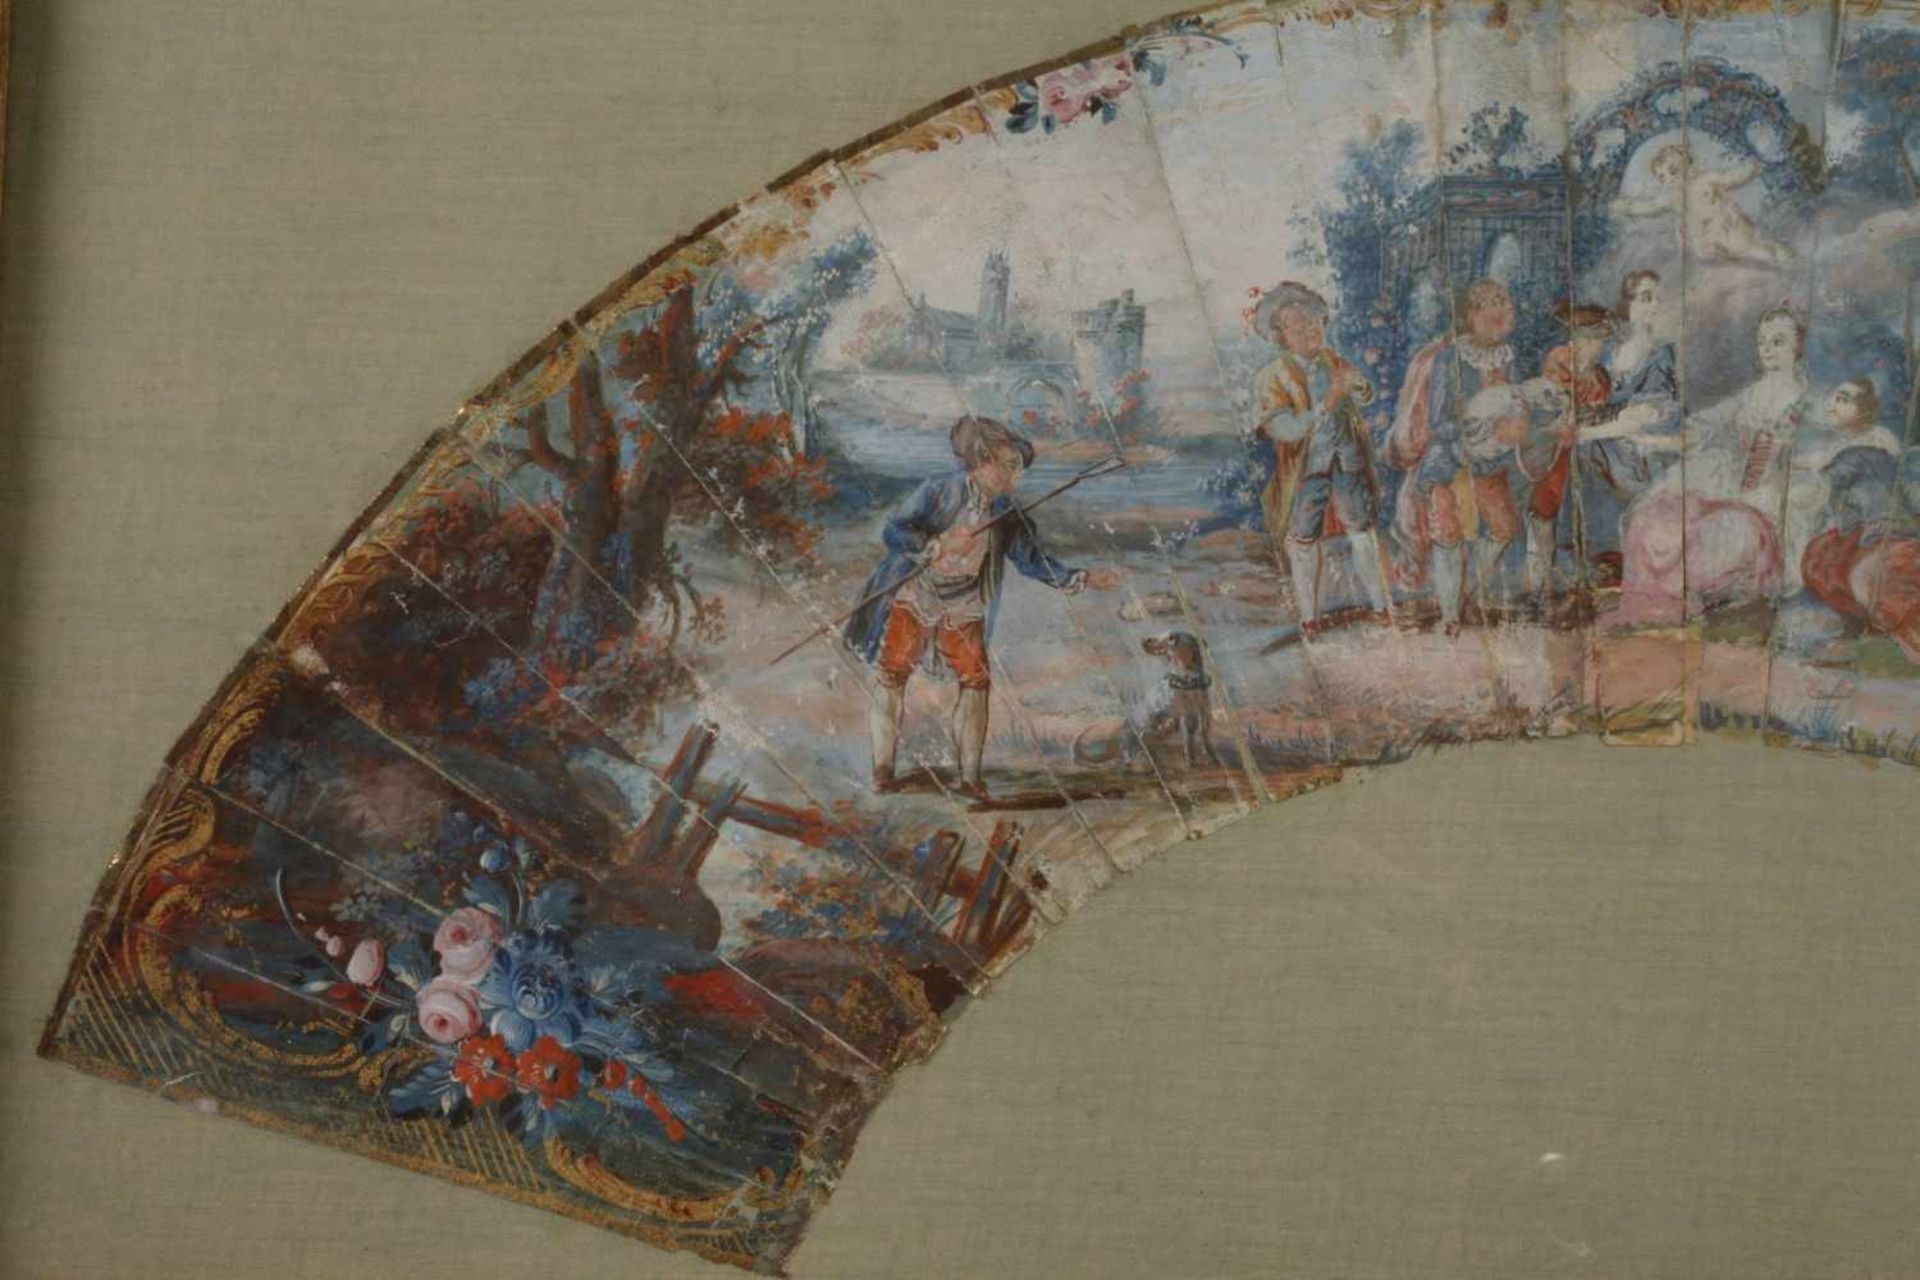 Gerahmter Fächer Rokokoum 1780, Gouache auf Papier, ungemarkt, genrehafte Darstellung einer feinen - Bild 2 aus 3